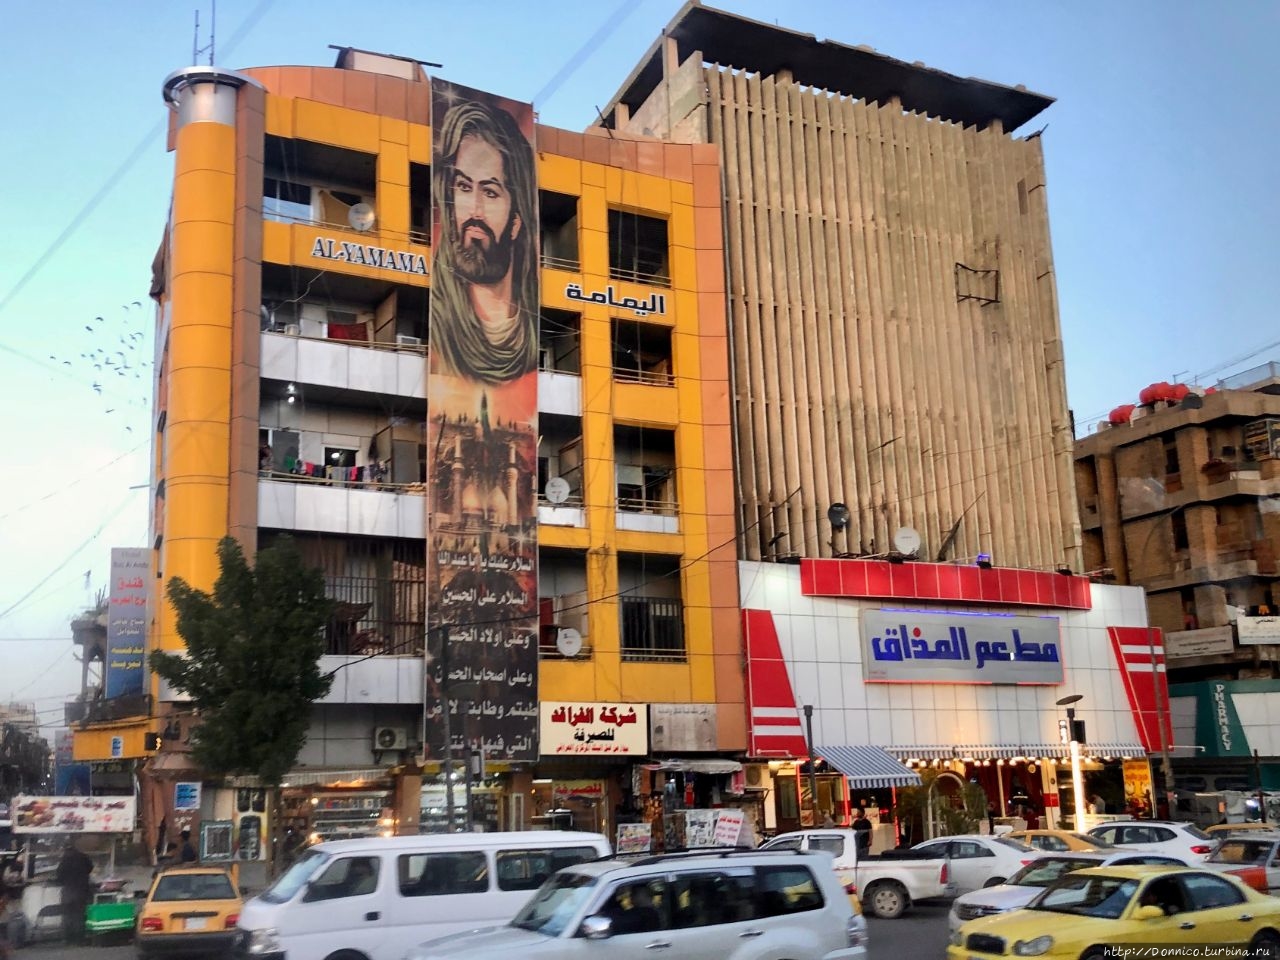 Каррада (район Багдада) Багдад, Ирак